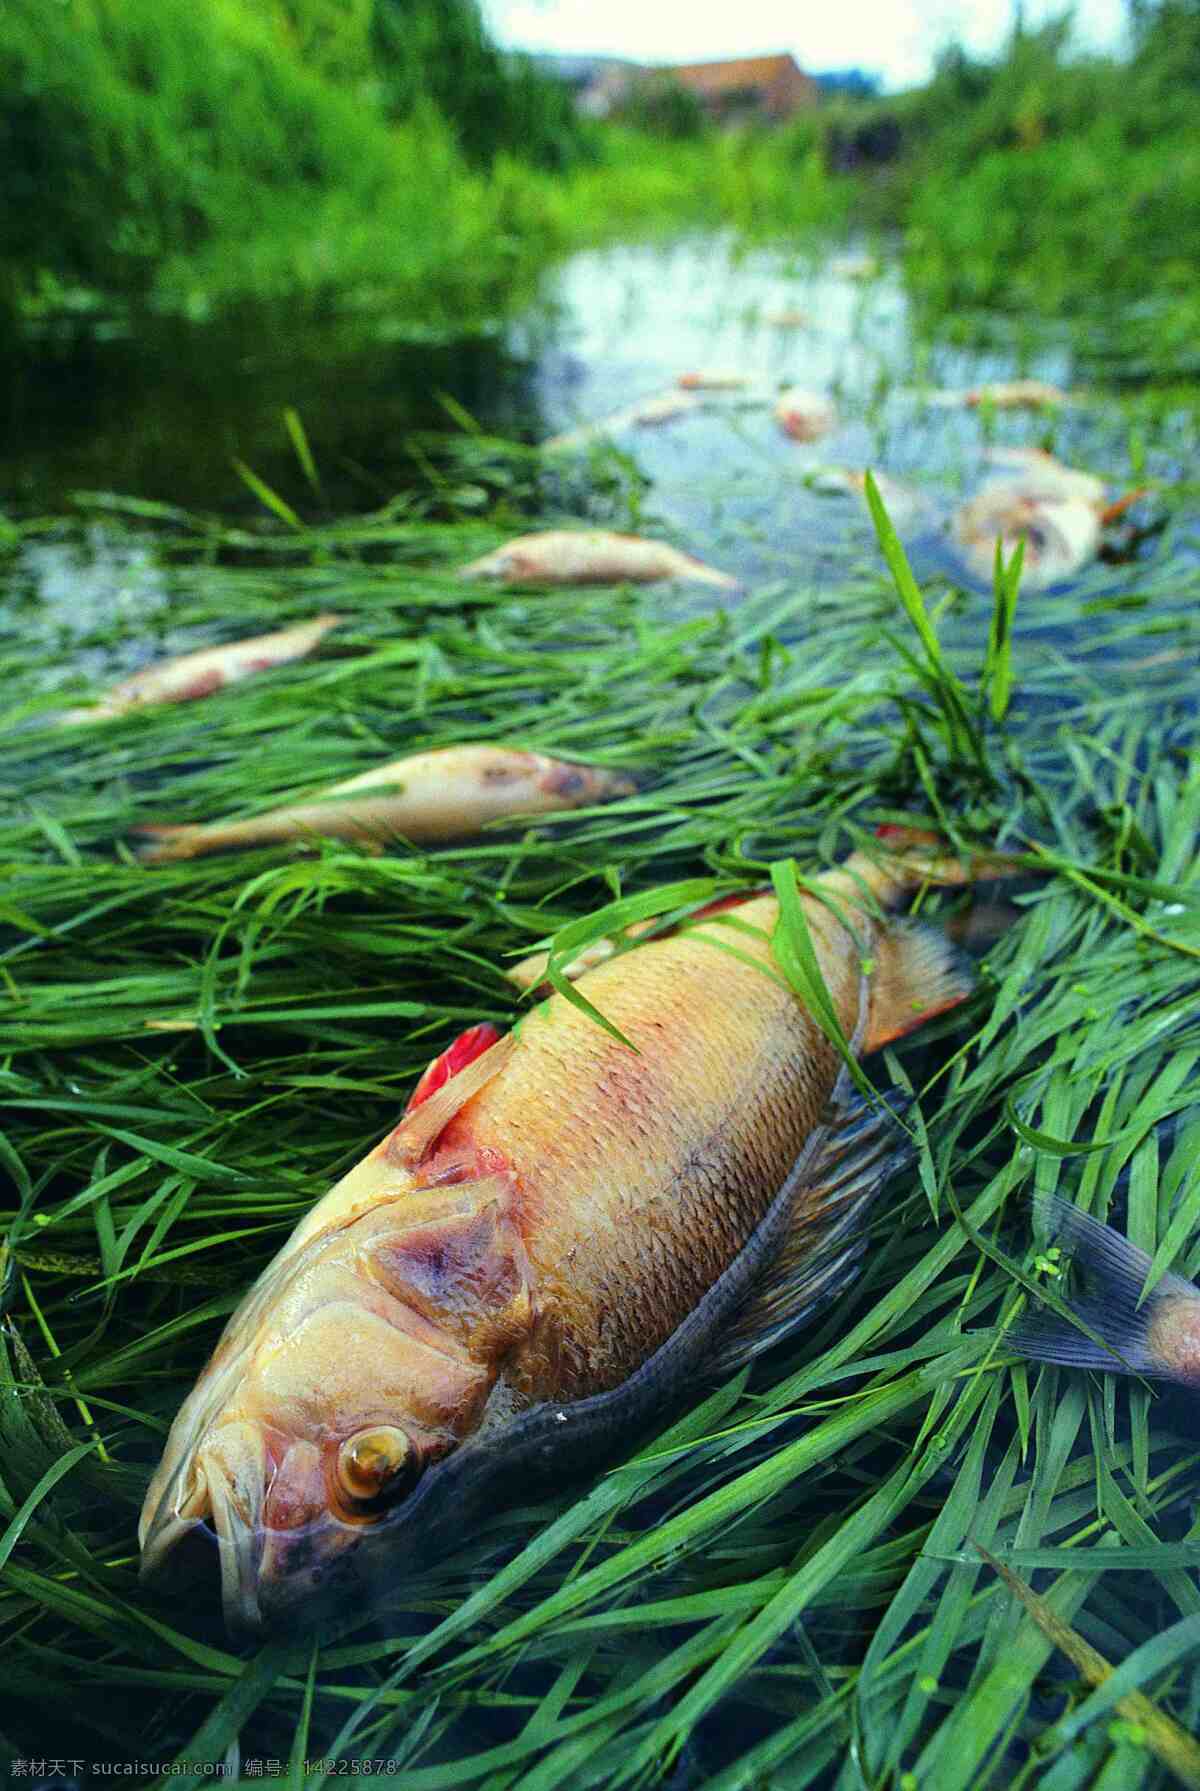 环保简报 环保 死鱼 污染 生活百科 摄影图库